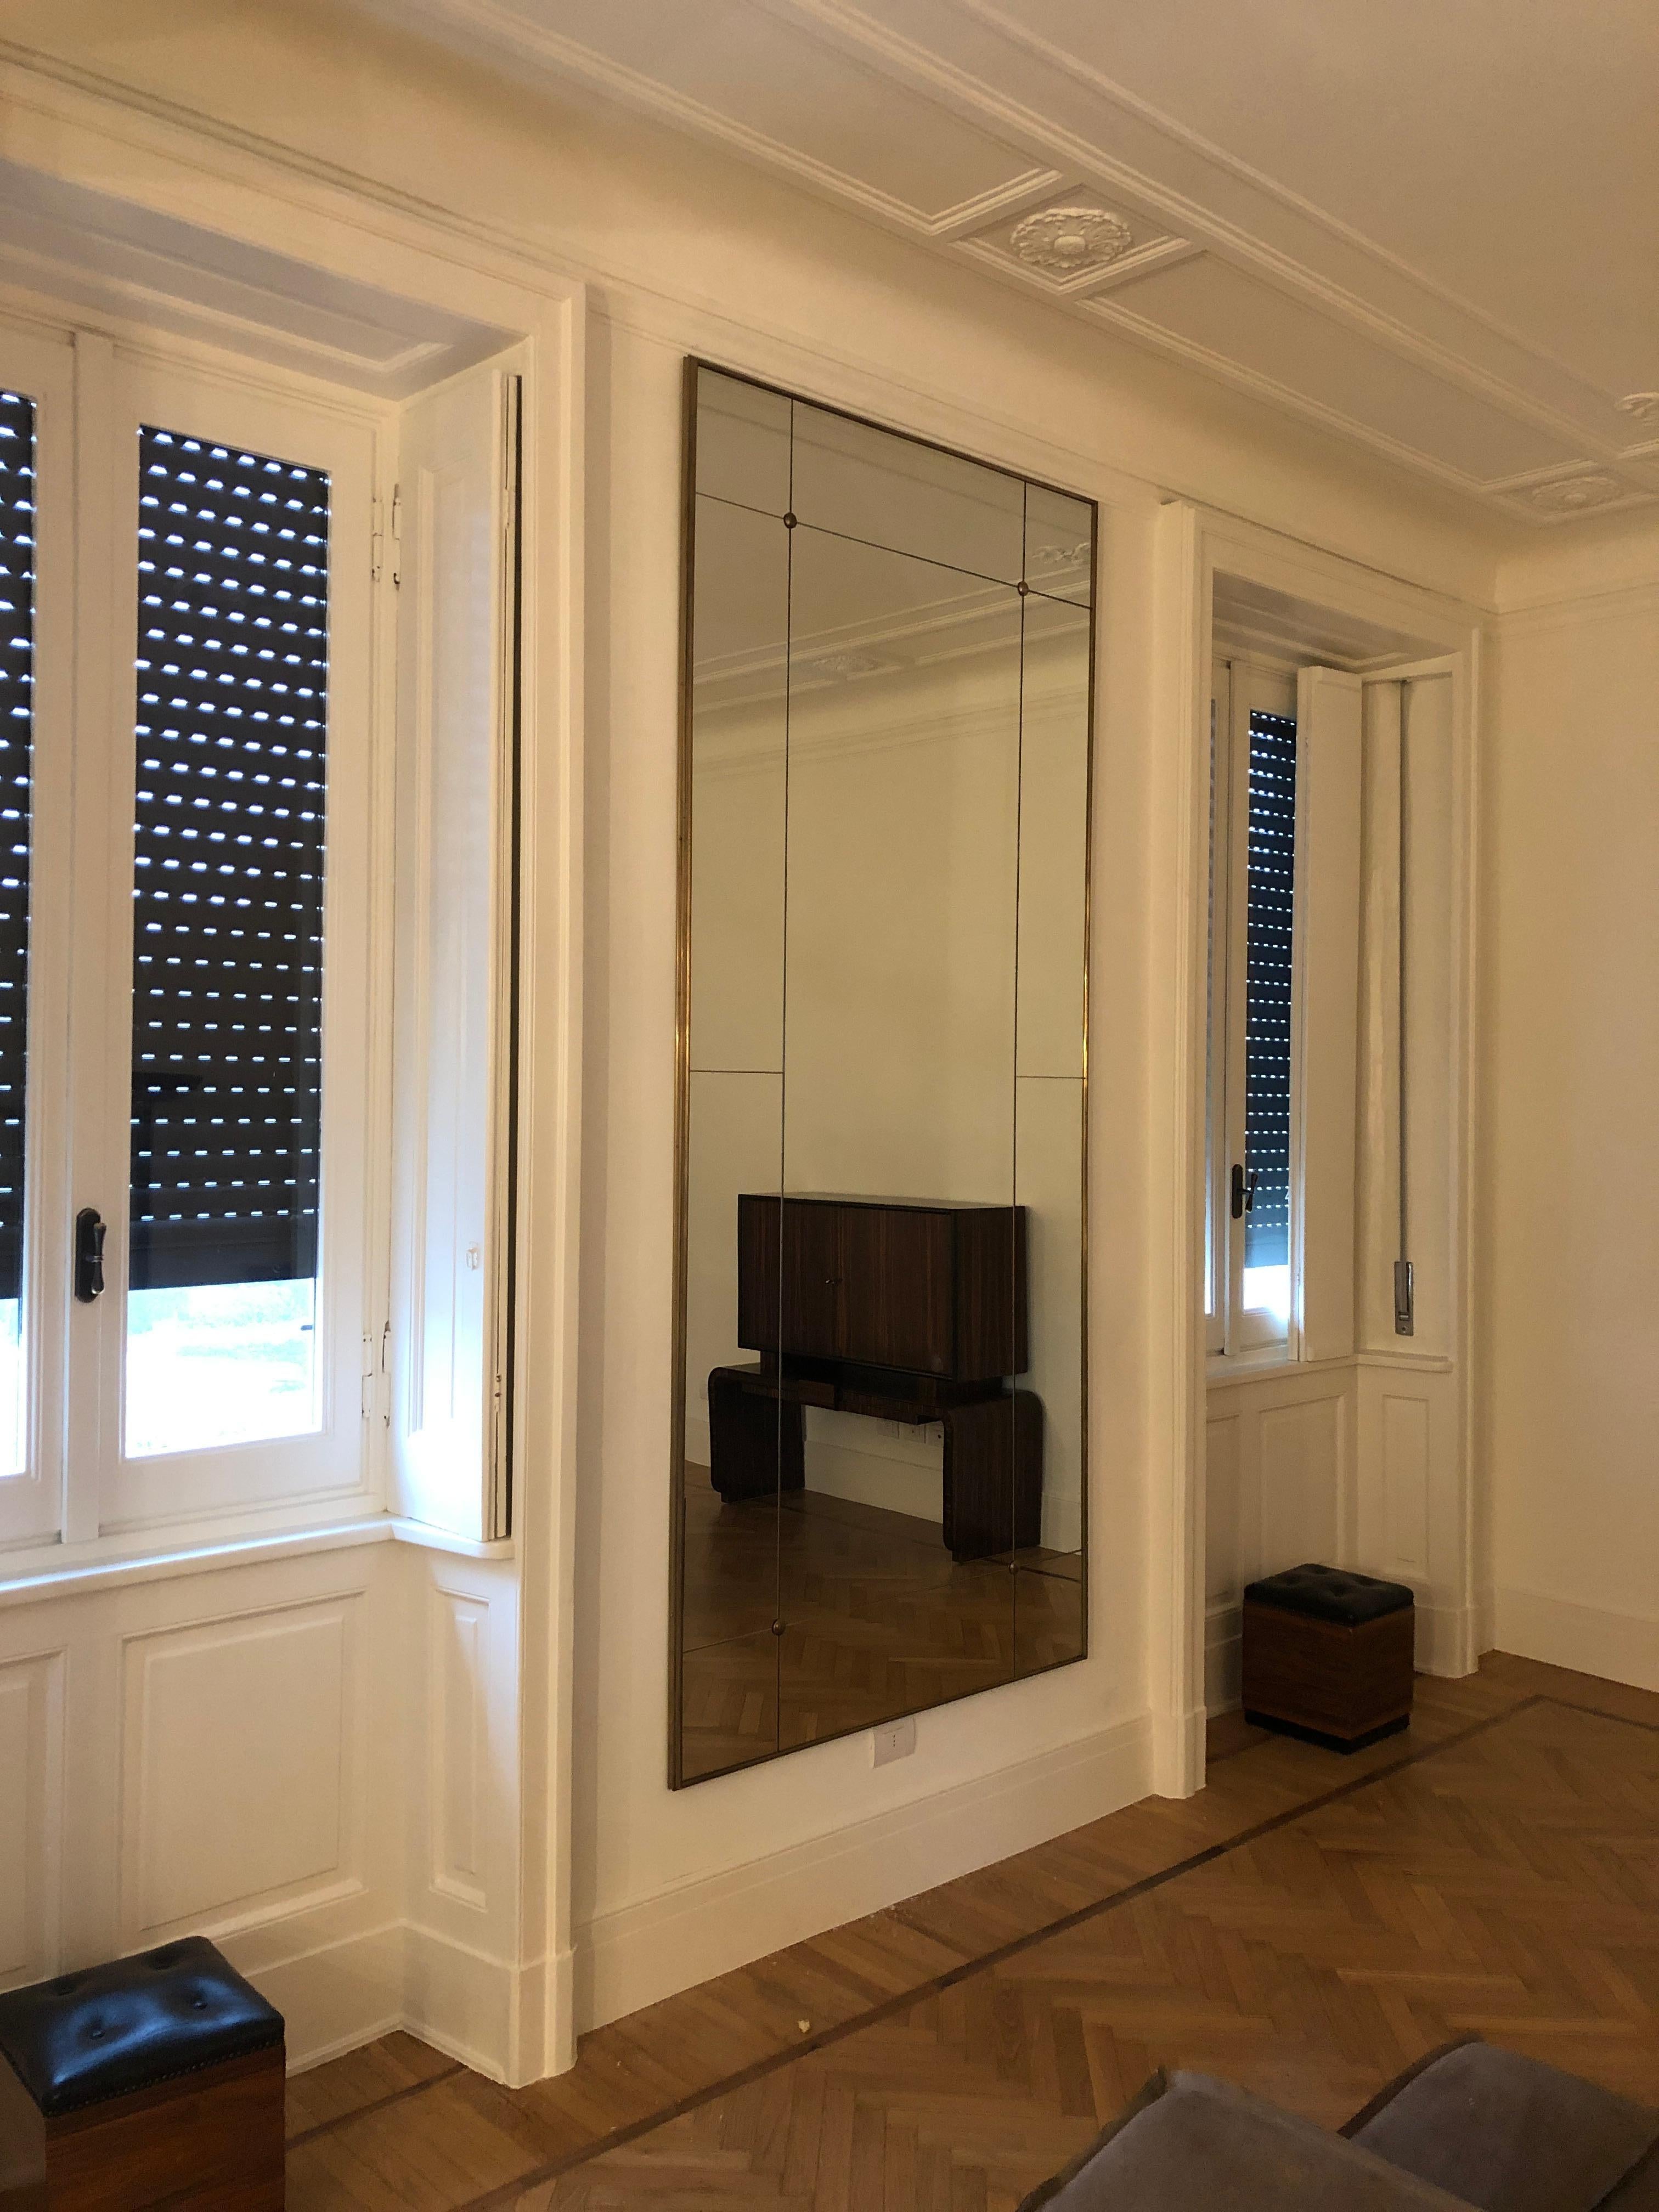 Pescetta présente sa collection de miroirs contemporains personnalisables.

Avec leur cadre en laiton, leur aspect vitré et leurs clous en laiton, ces miroirs reproduisent l'idée des miroirs de style Art déco du début du XXe siècle. Ils conviennent